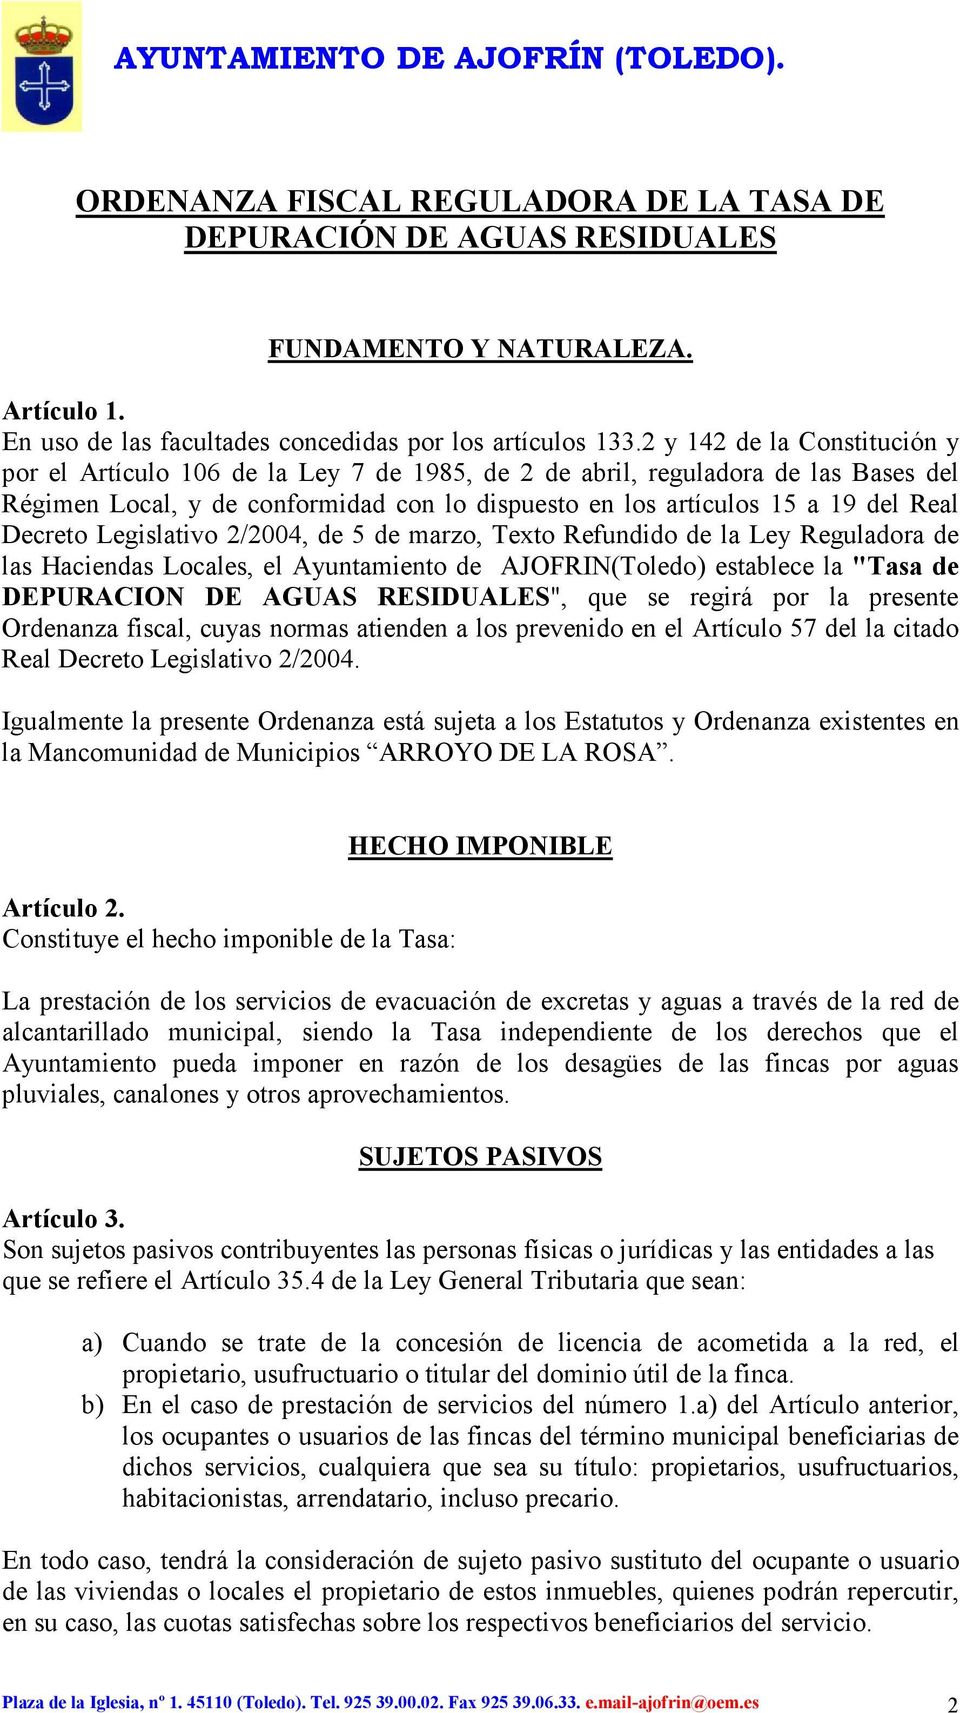 Decreto Legislativo 2/2004, de 5 de marzo, Texto Refundido de la Ley Reguladora de las Haciendas Locales, el Ayuntamiento de AJOFRIN(Toledo) establece la "Tasa de DEPURACION DE AGUAS RESIDUALES", que